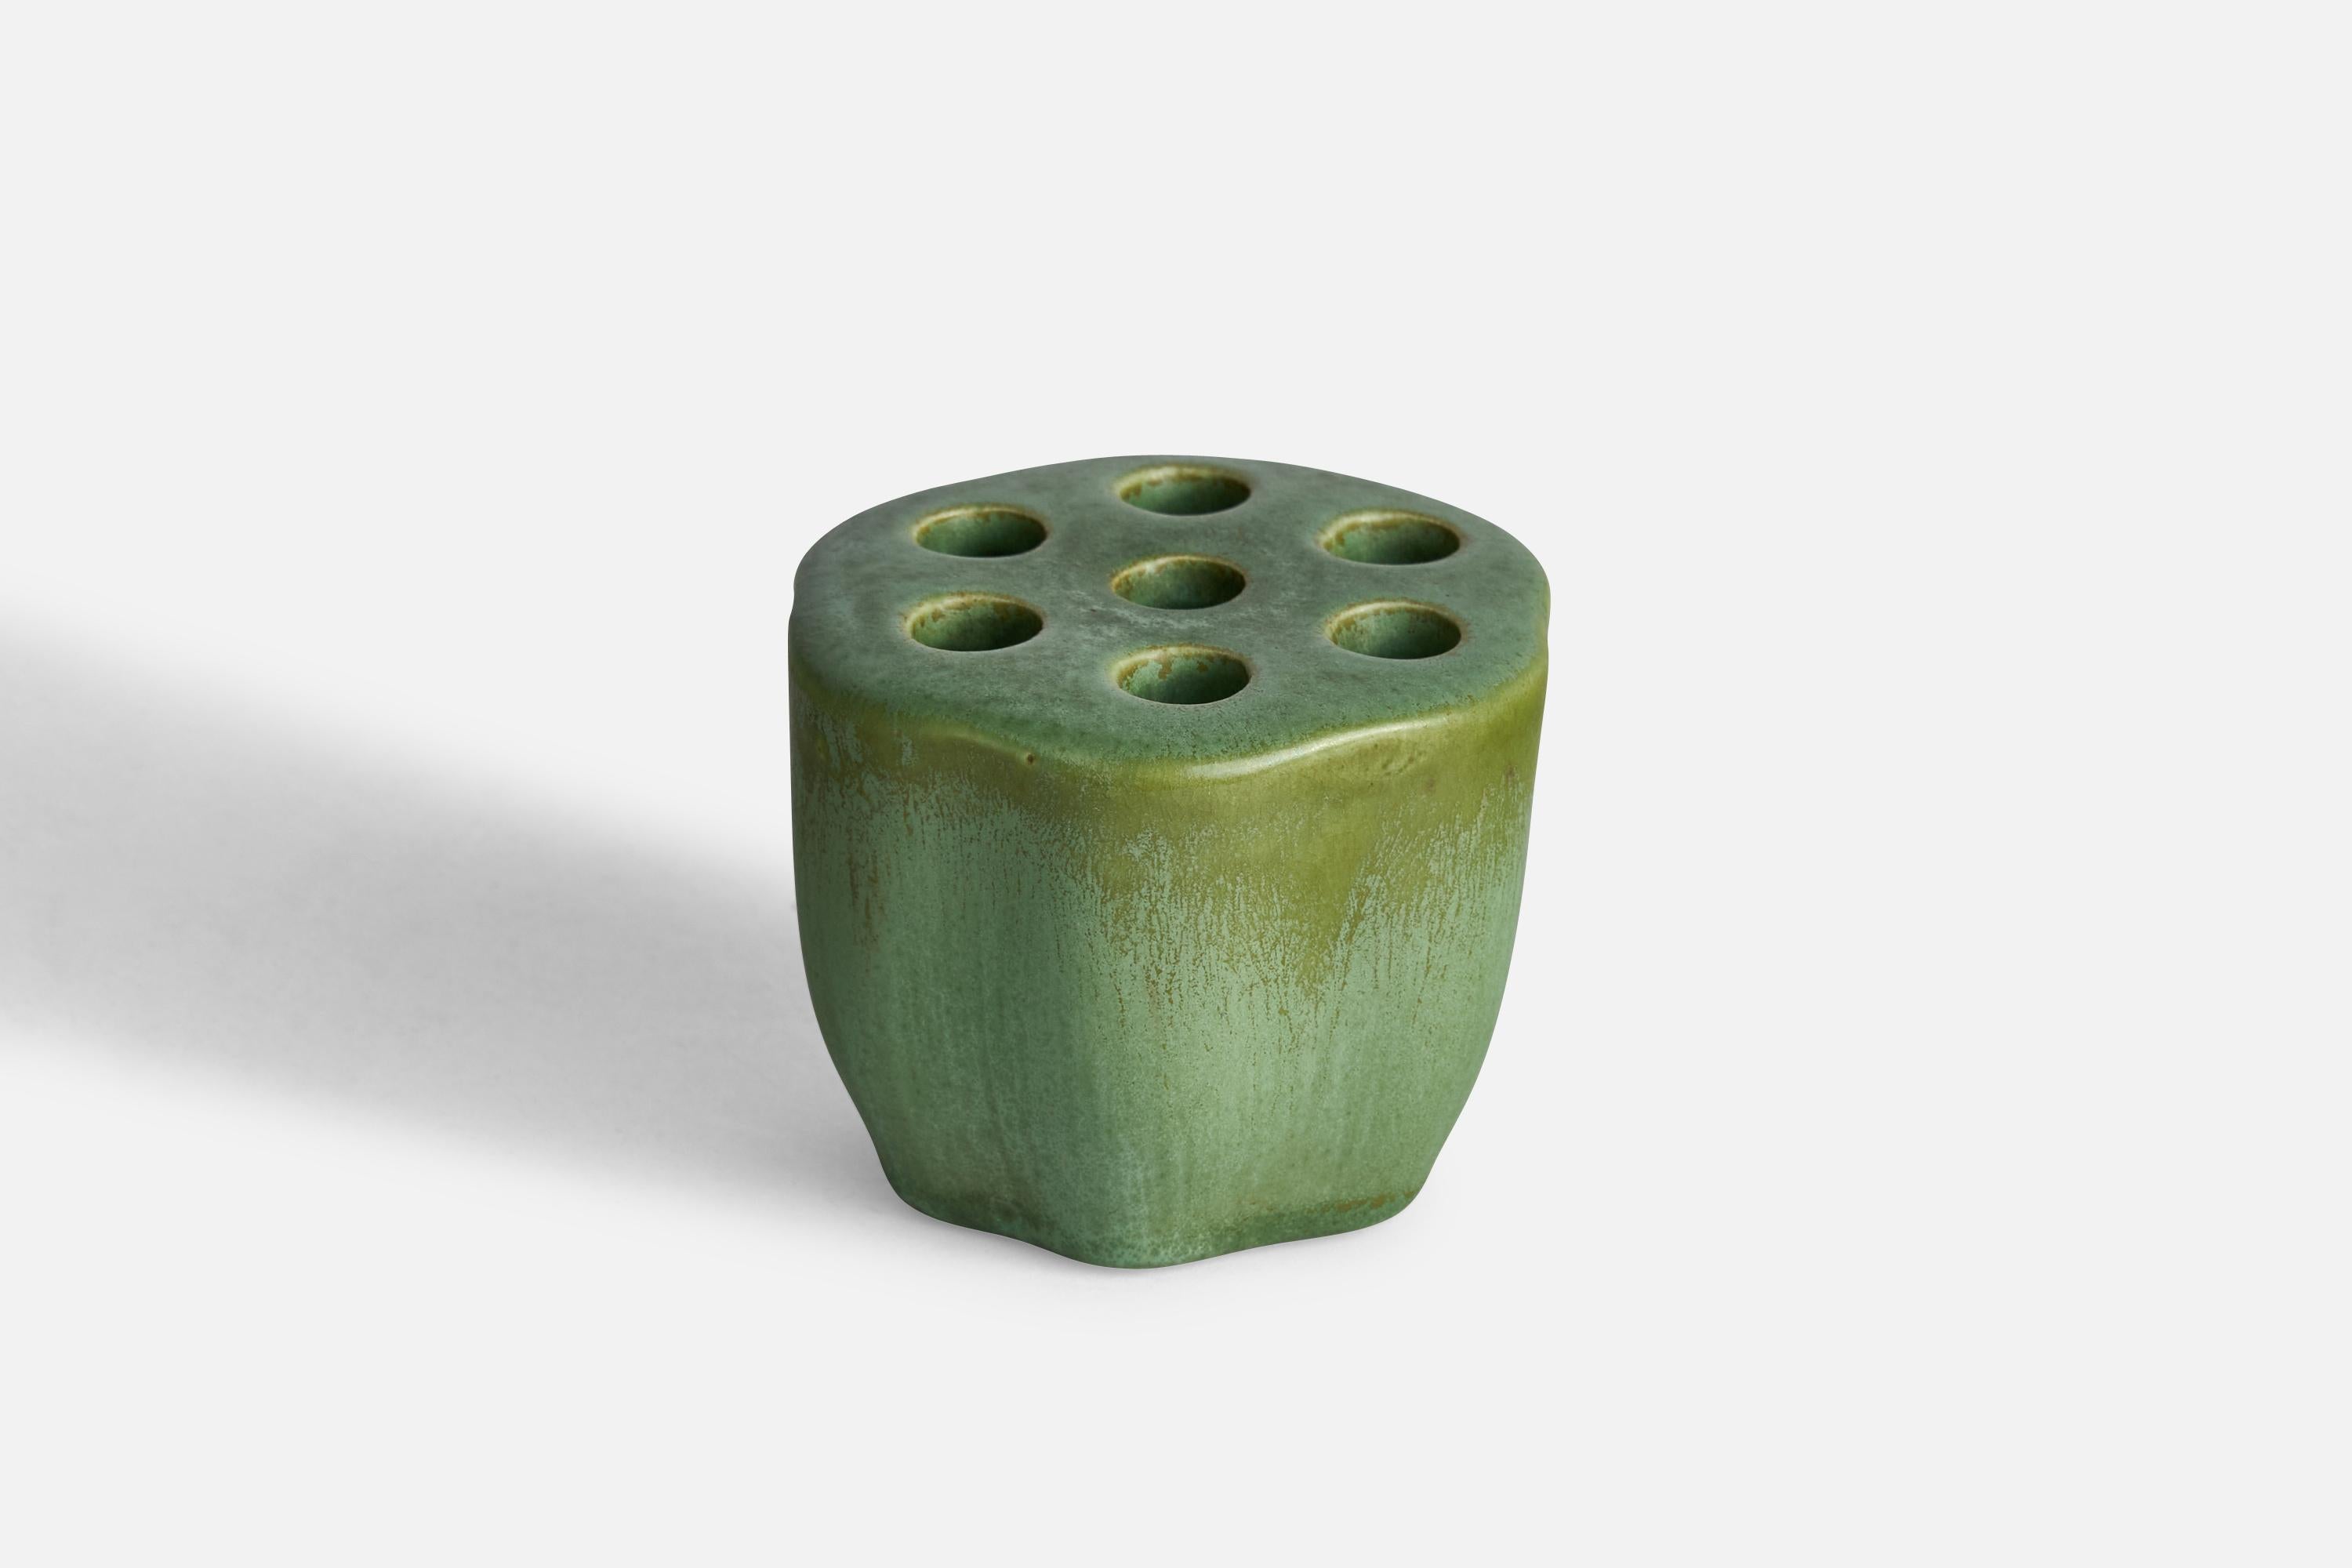 Stifthalter aus grün glasierter Keramik, entworfen von Arthur Percy und hergestellt von Gefle, Schweden, ca. 1930er Jahre.